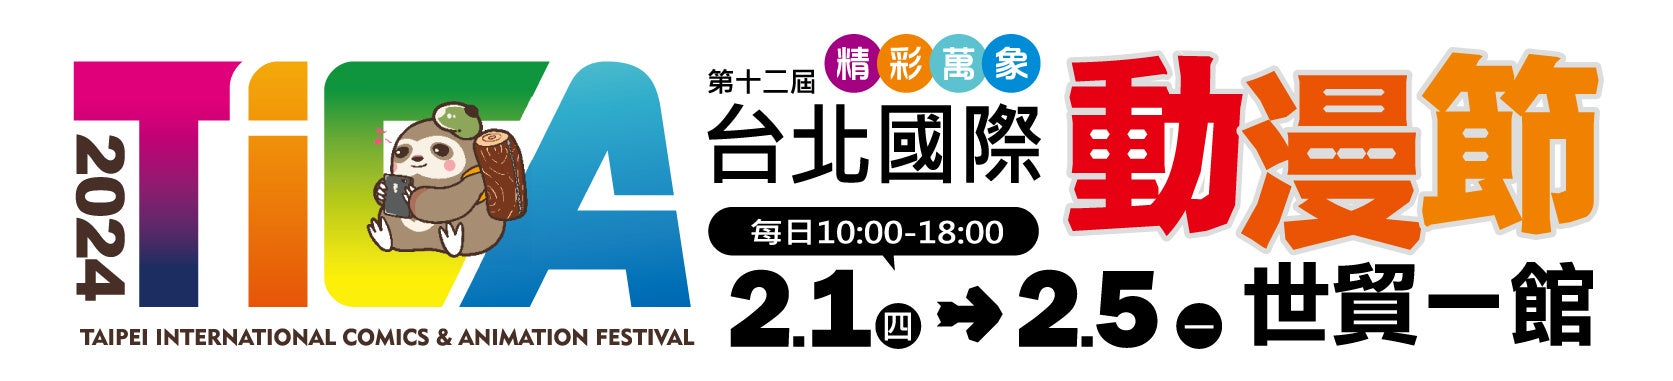 全13種類の展示、試遊、物販コーナー「第12回 台北國際動漫節」への出展内容を公開